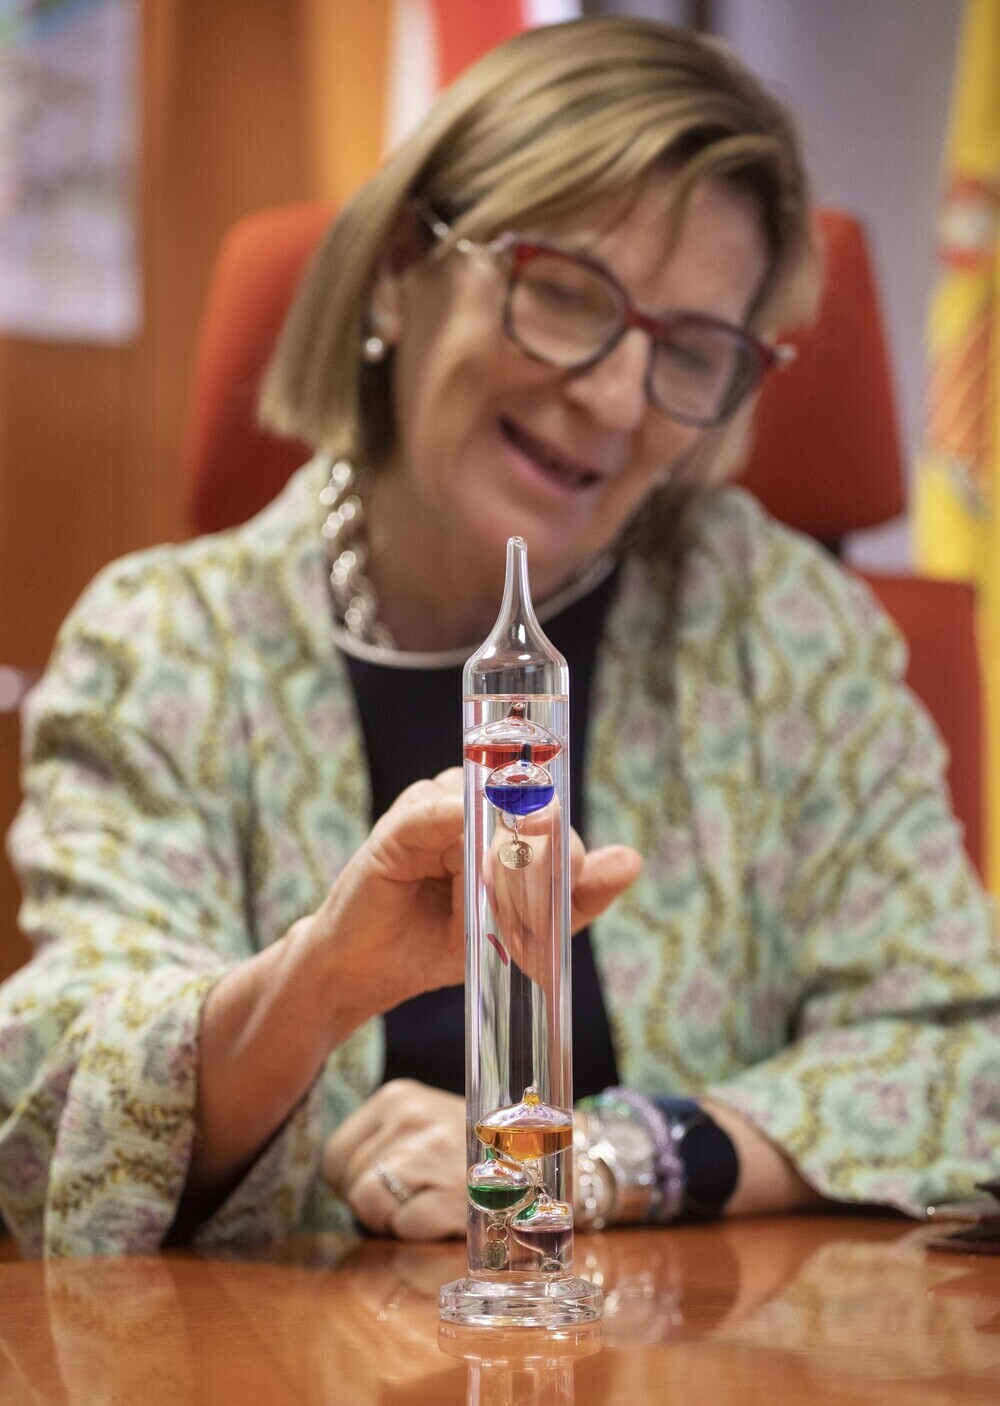 Paloma Castro muestra el funcionamiento del termómetro de Galileo, un invento del Renacimiento que actualmente tiene uso decorativo.